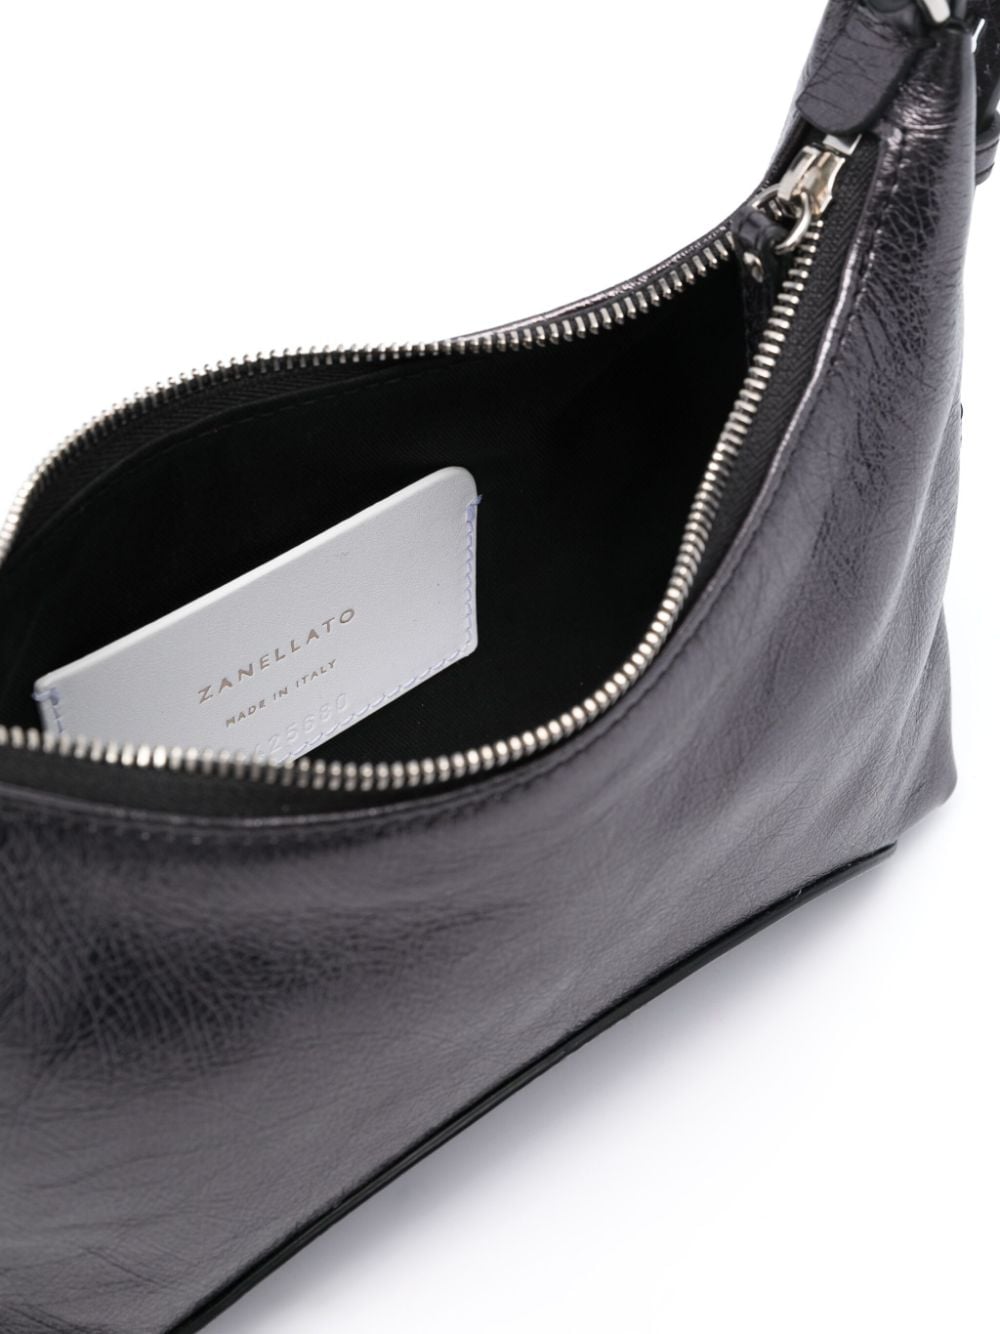 Zanellato ZANELLATO- Mita Leather Shoulder Bag